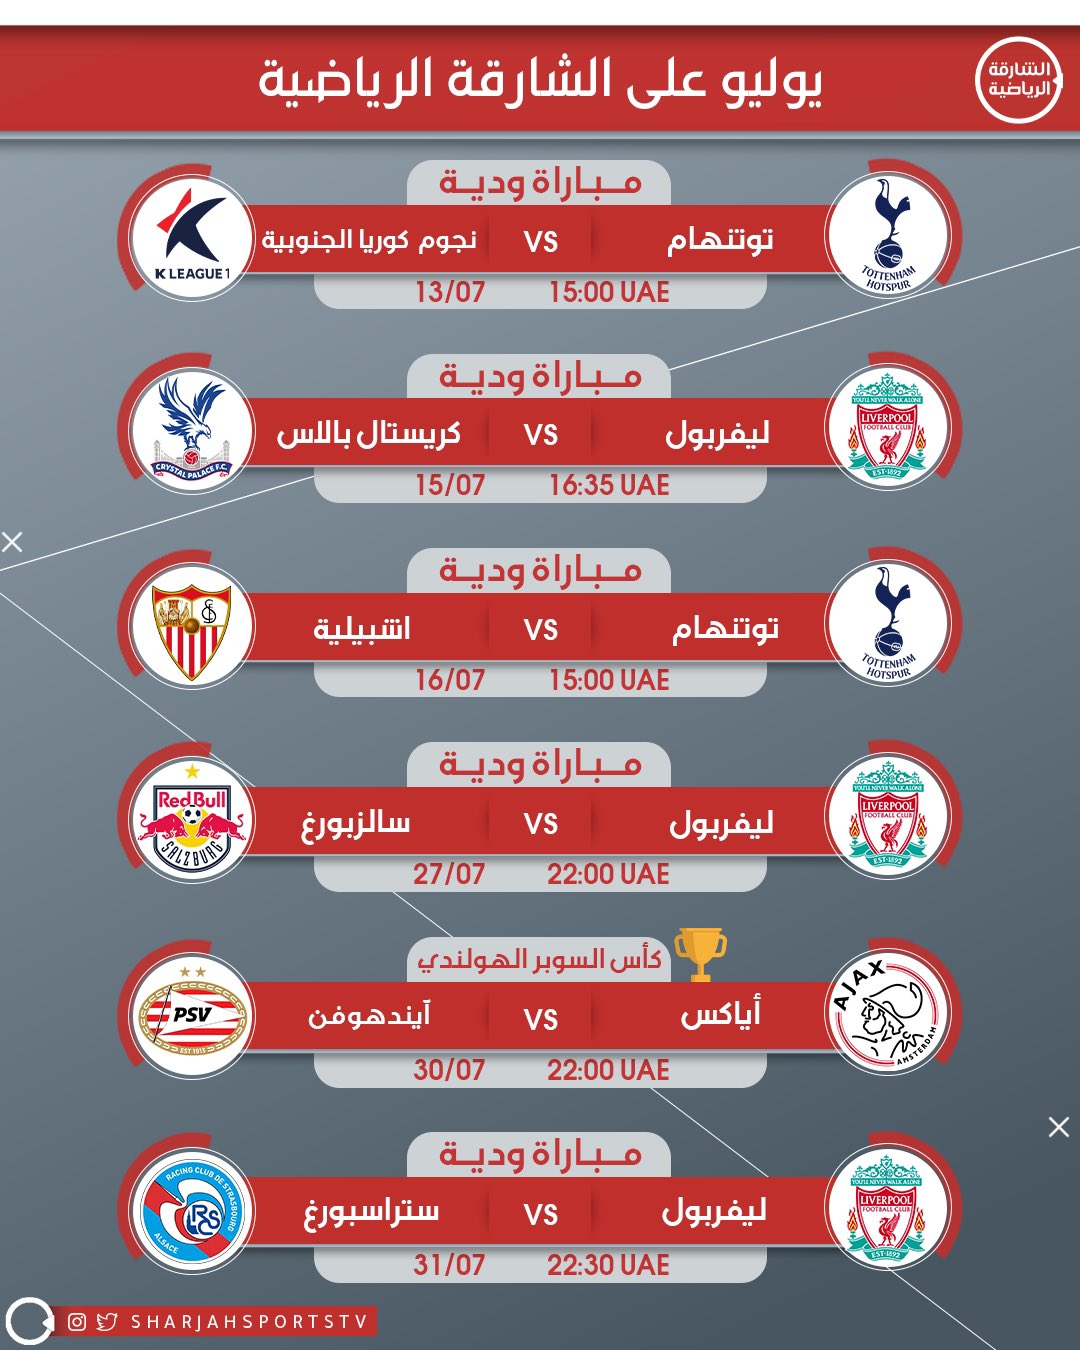 قناة الشارقة الرياضية Sharjah Sport